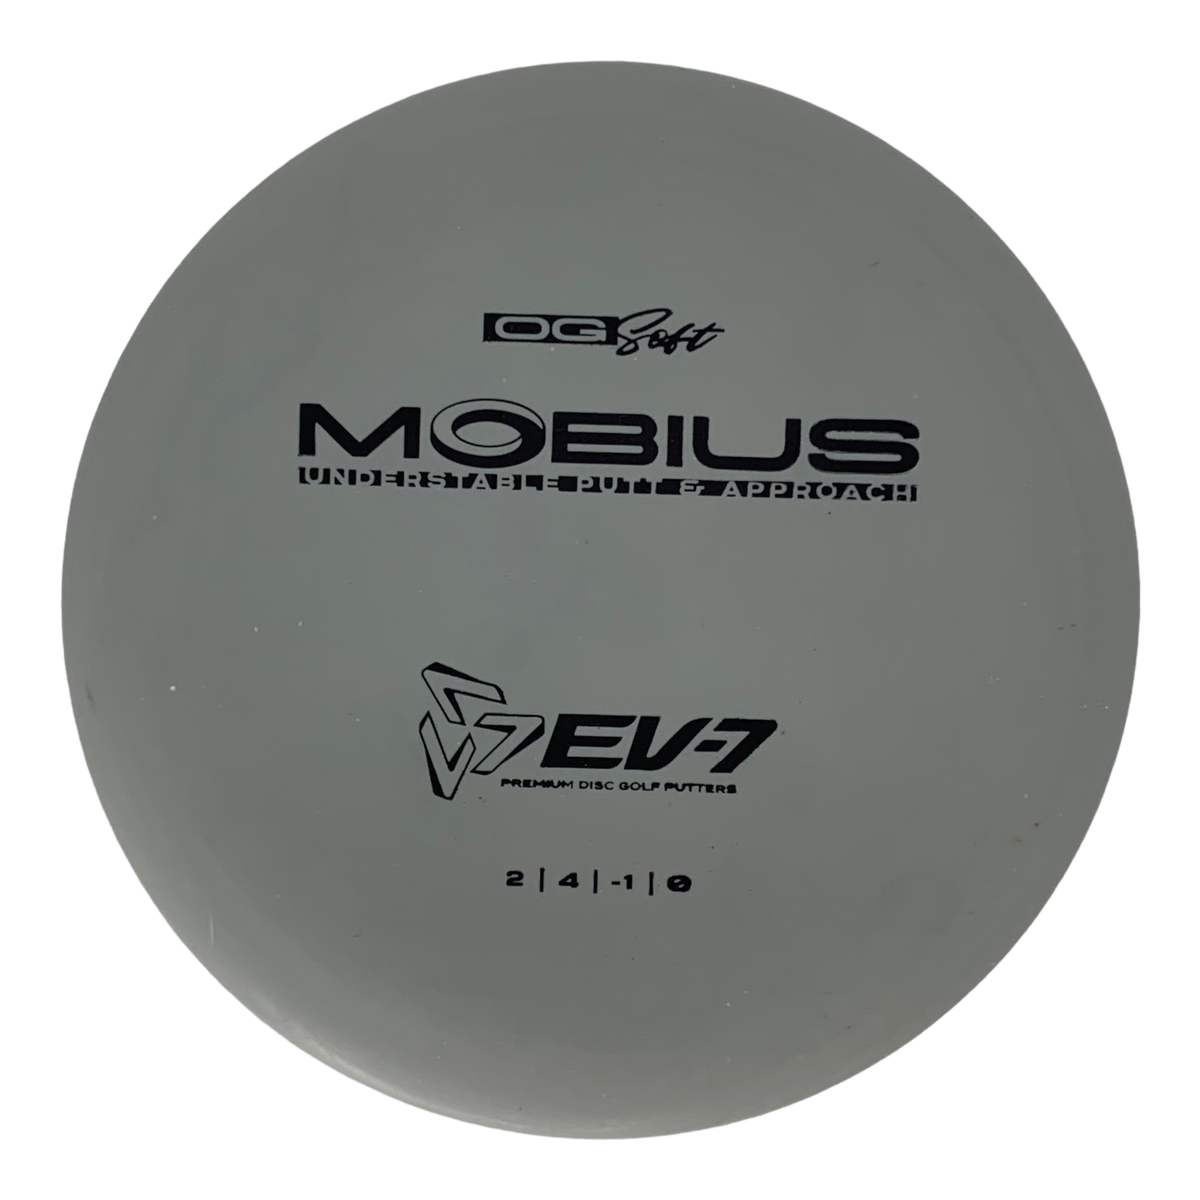 EV-7 Mobius - OG Soft